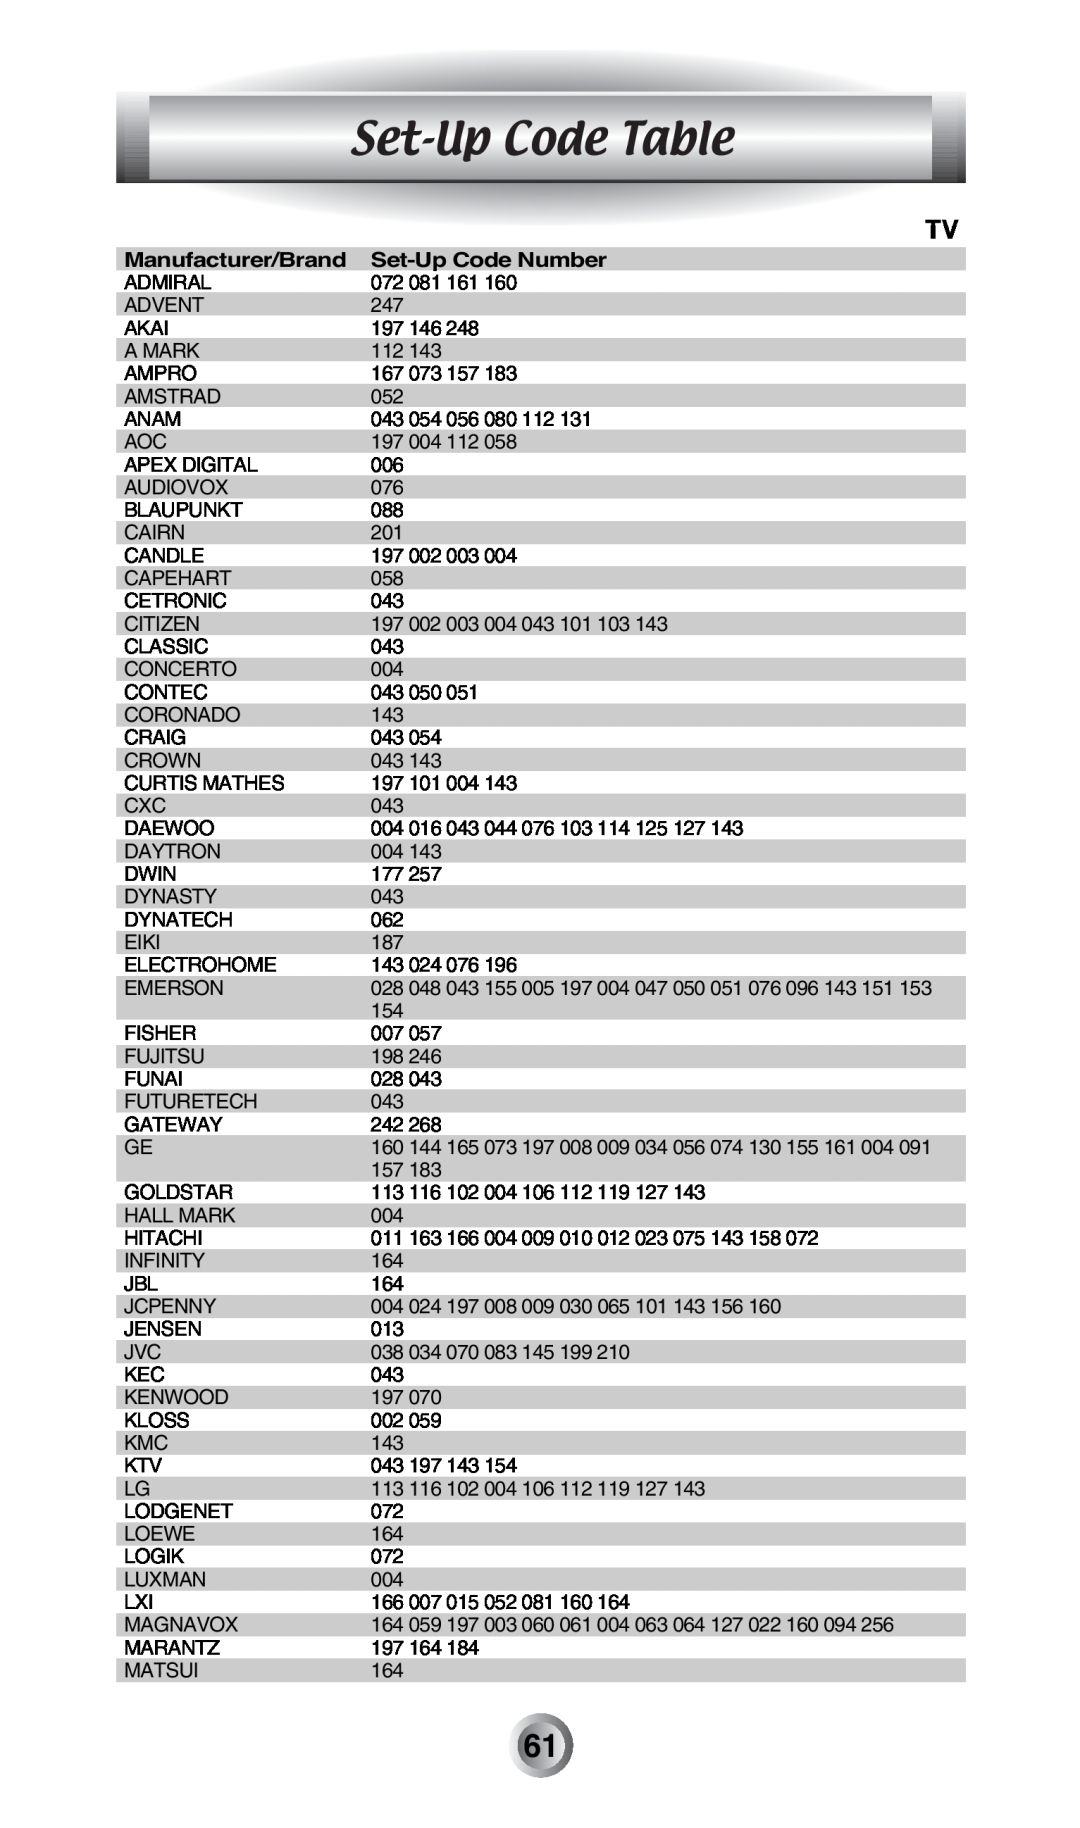 Radio Shack MX-500TM manual Set-Up Code Table, Manufacturer/Brand, Set-Up Code Number 